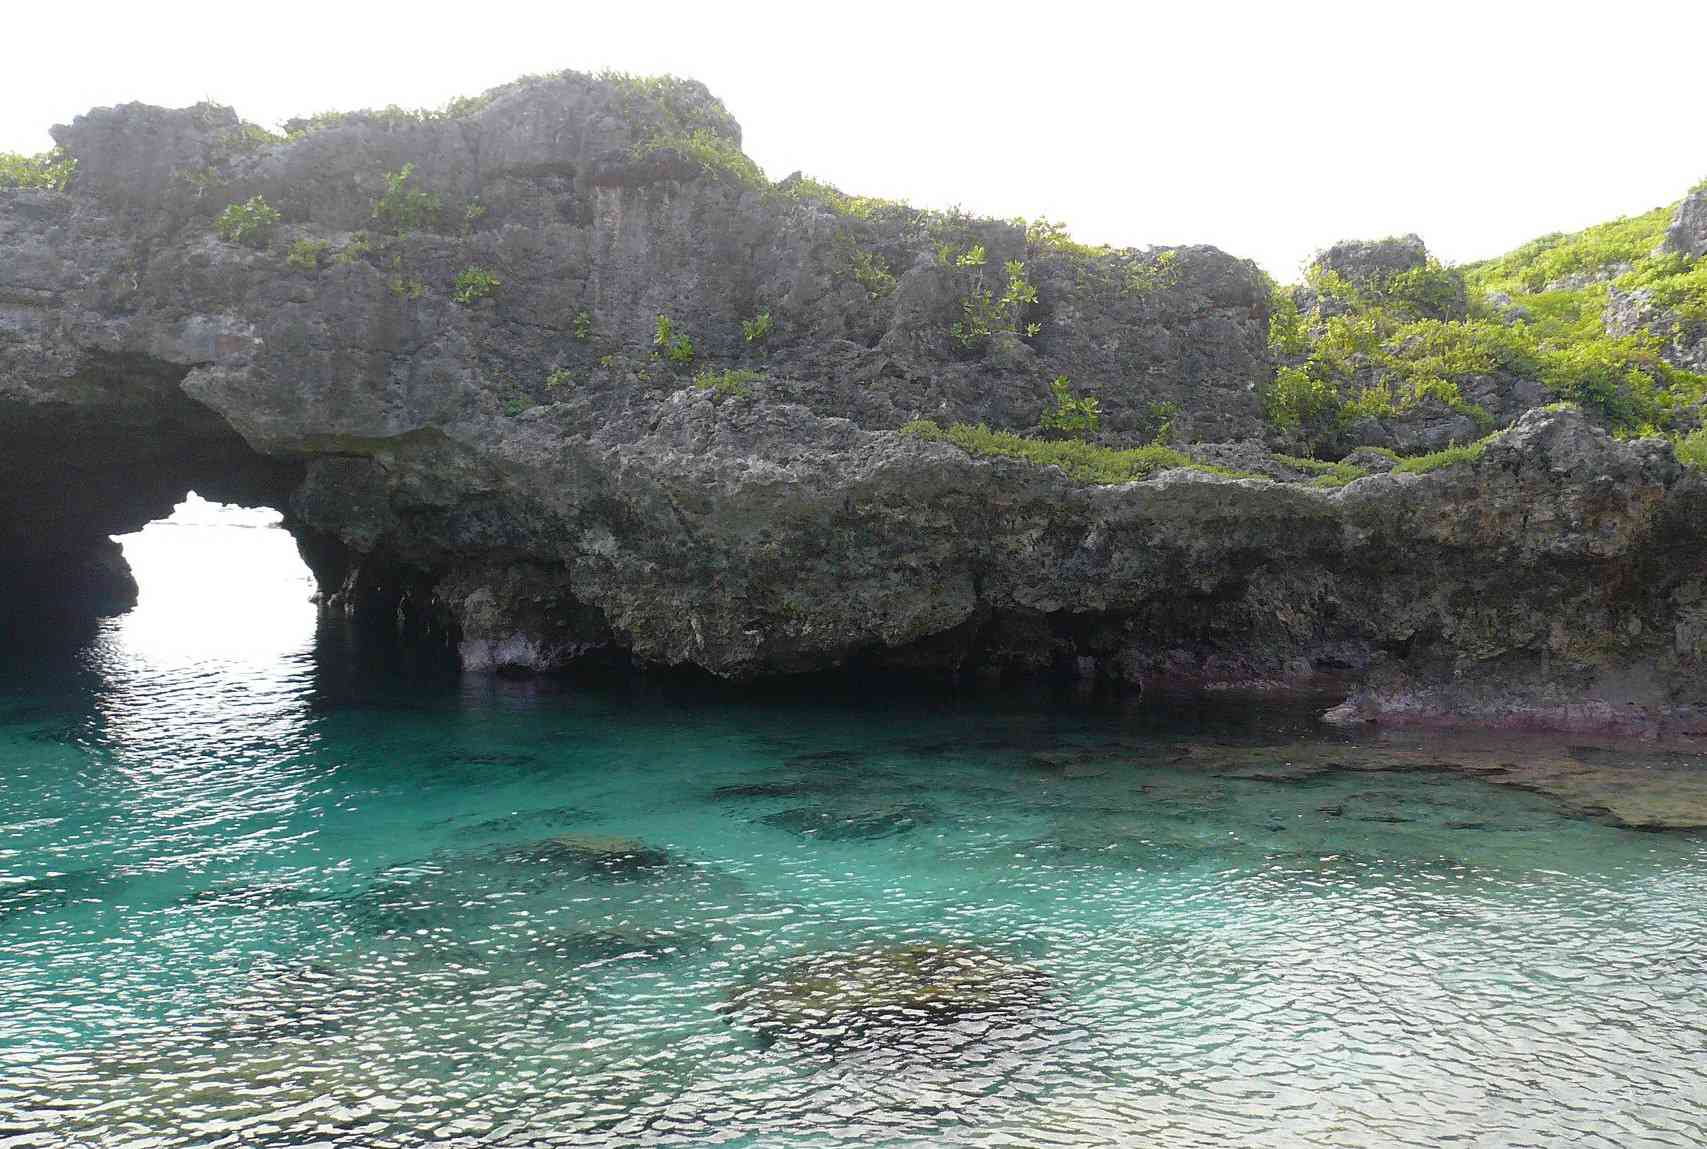 拱形的岩层延伸在清澈的热带水域上